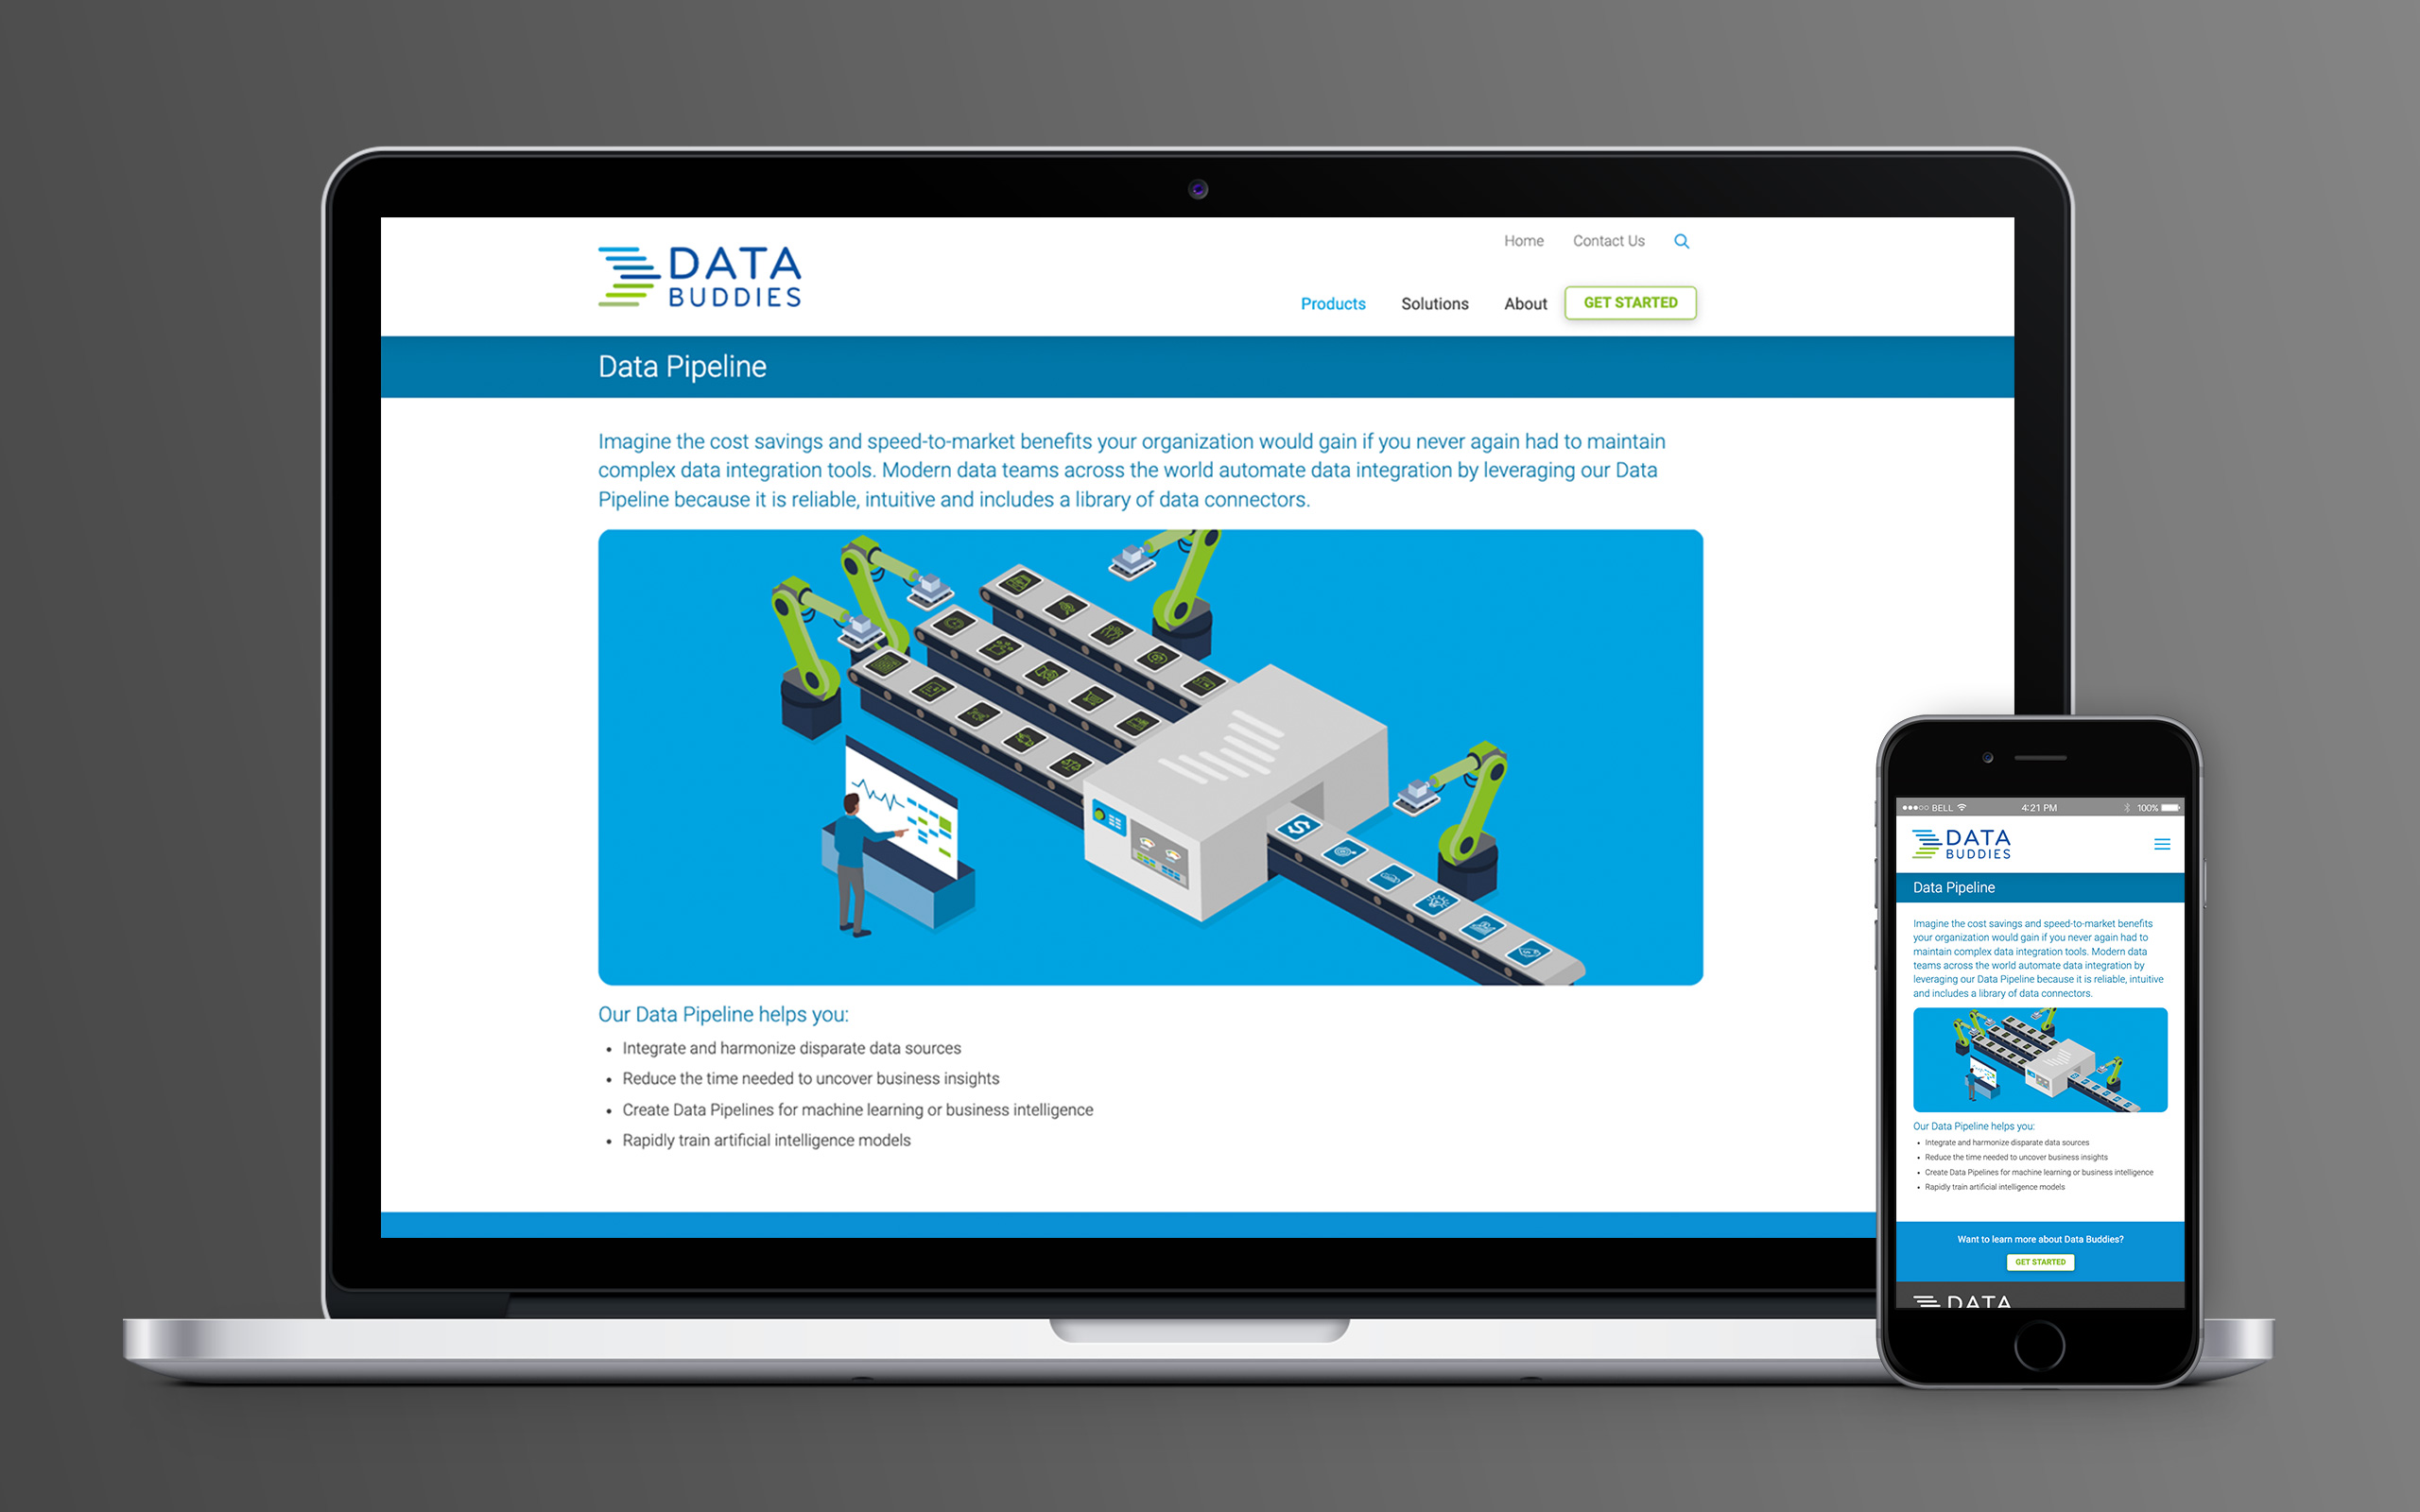 Data Buddies Website Data Pipeline